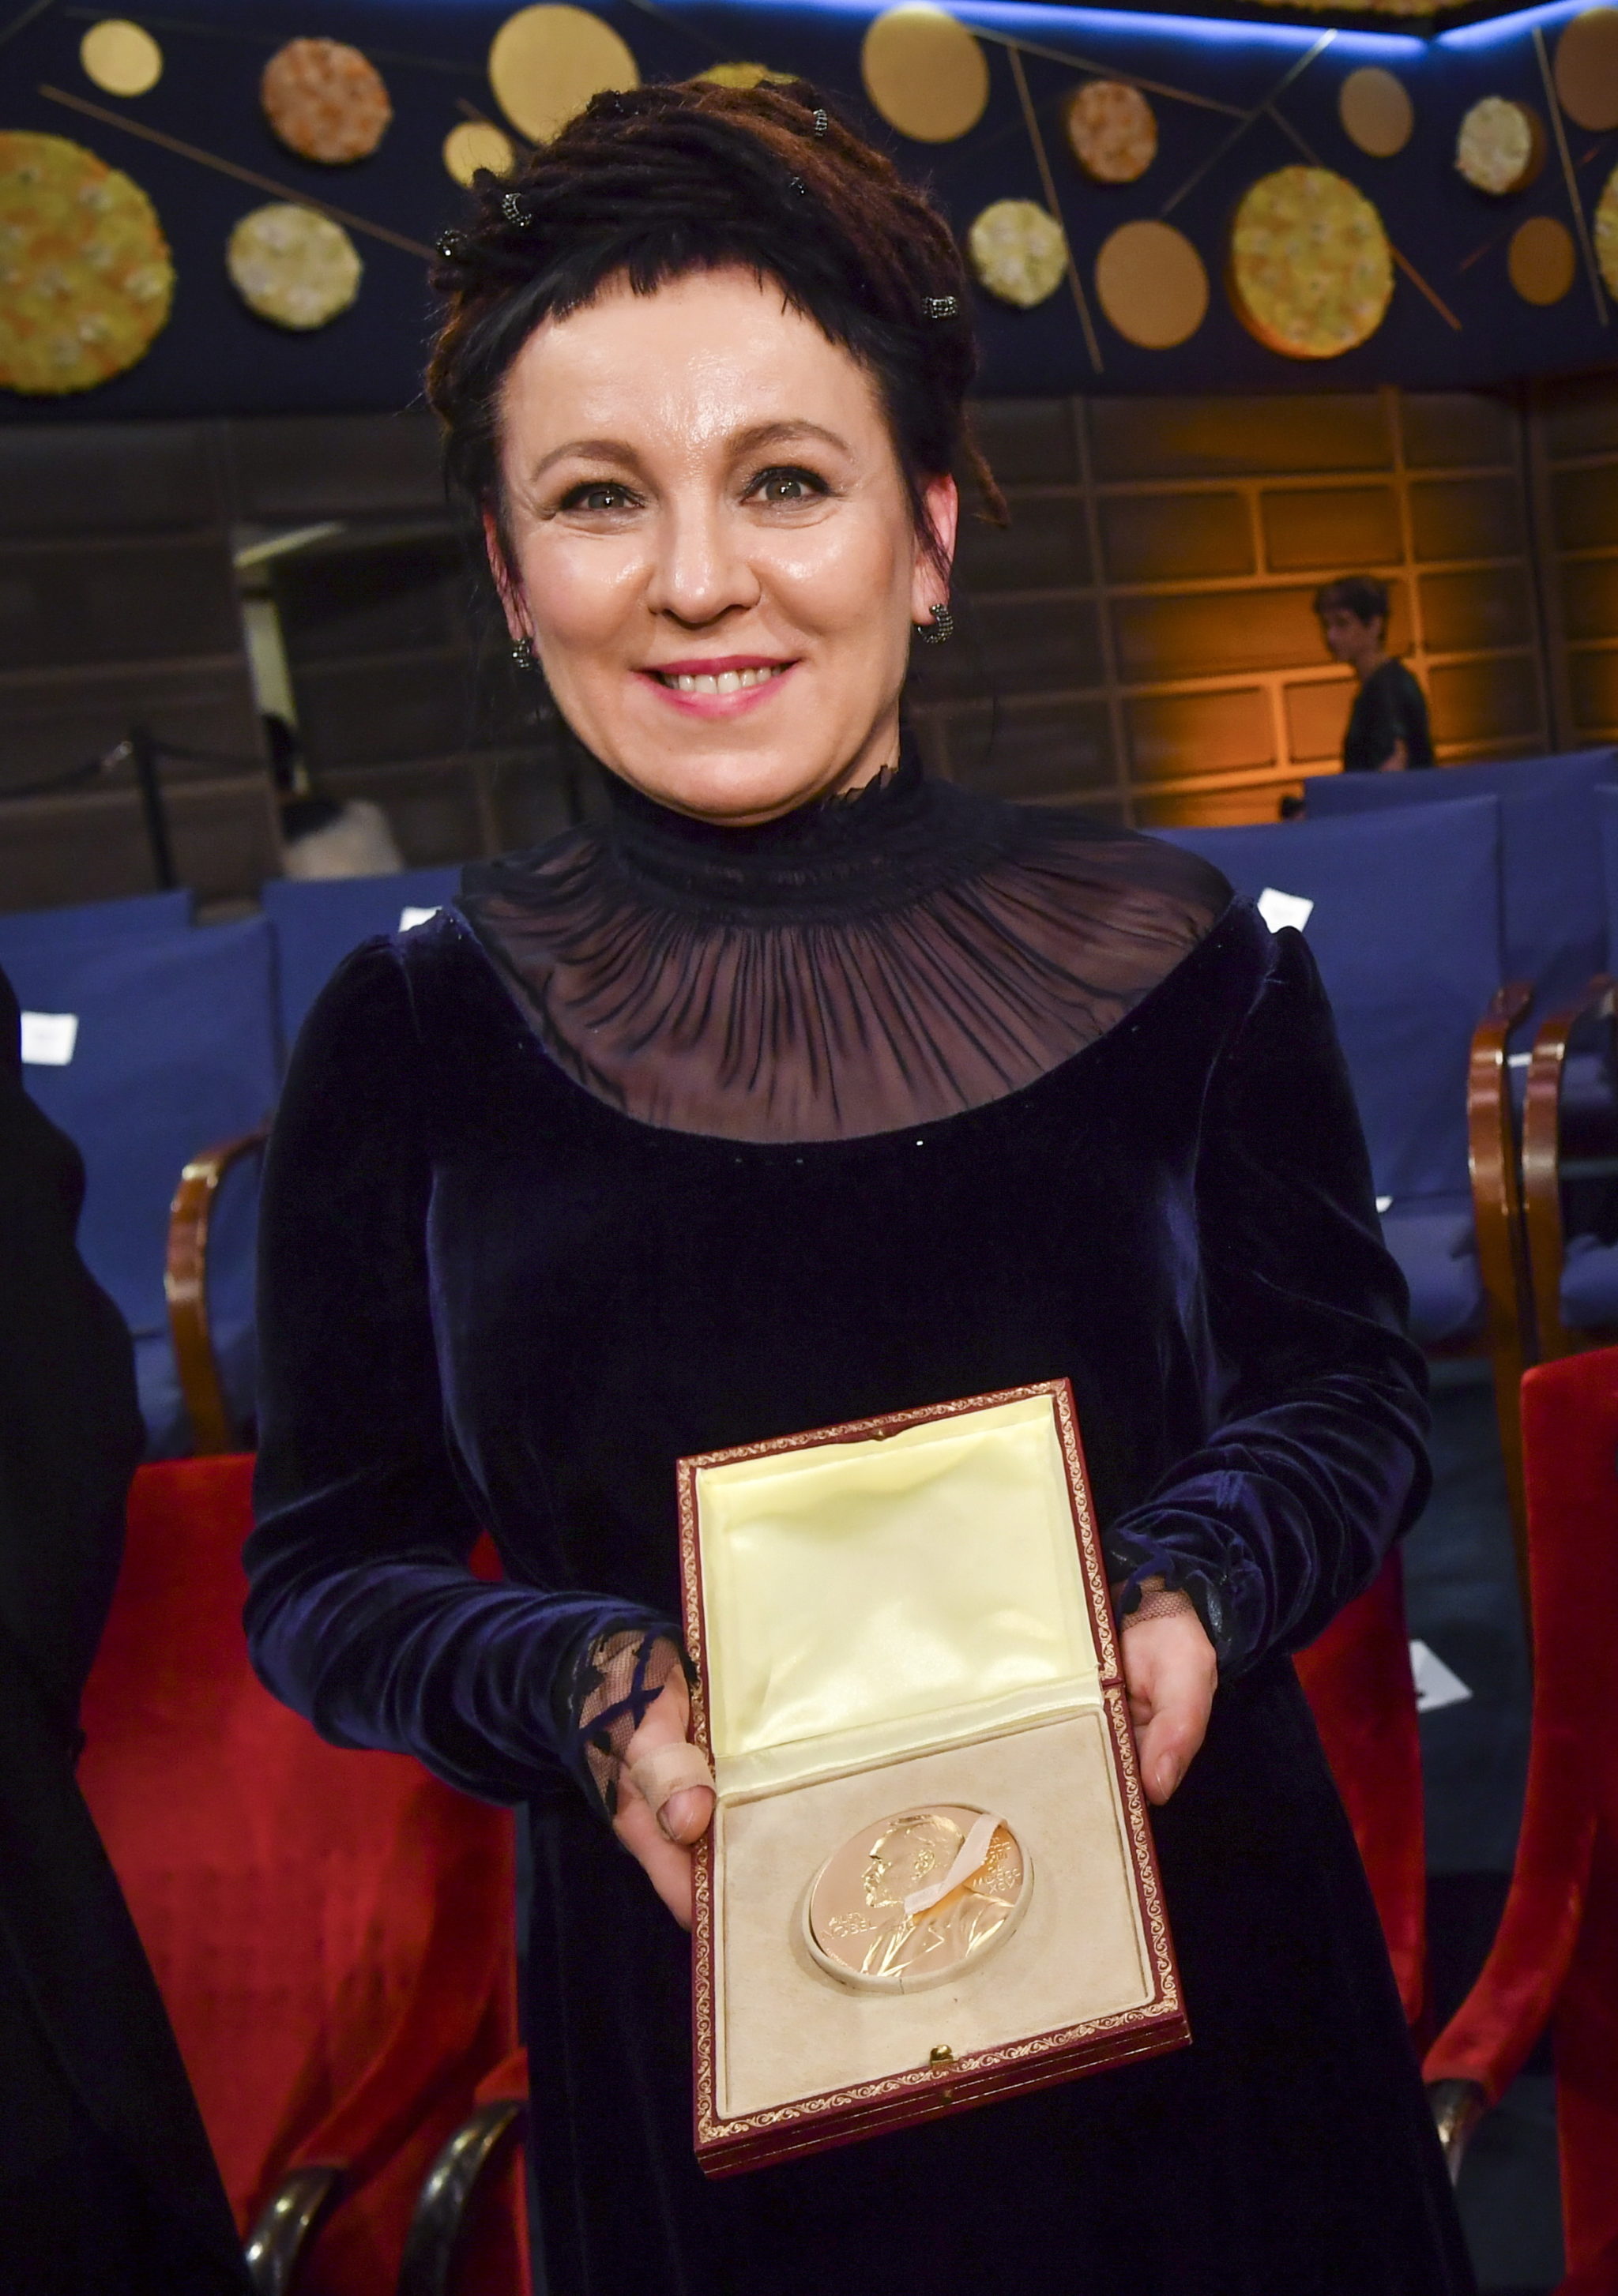 Szwecja, Sztokholm, Olga Tokarczuk odebrała literacką nagrodę Nobla, fot. EPA/Jonas Ekstromer